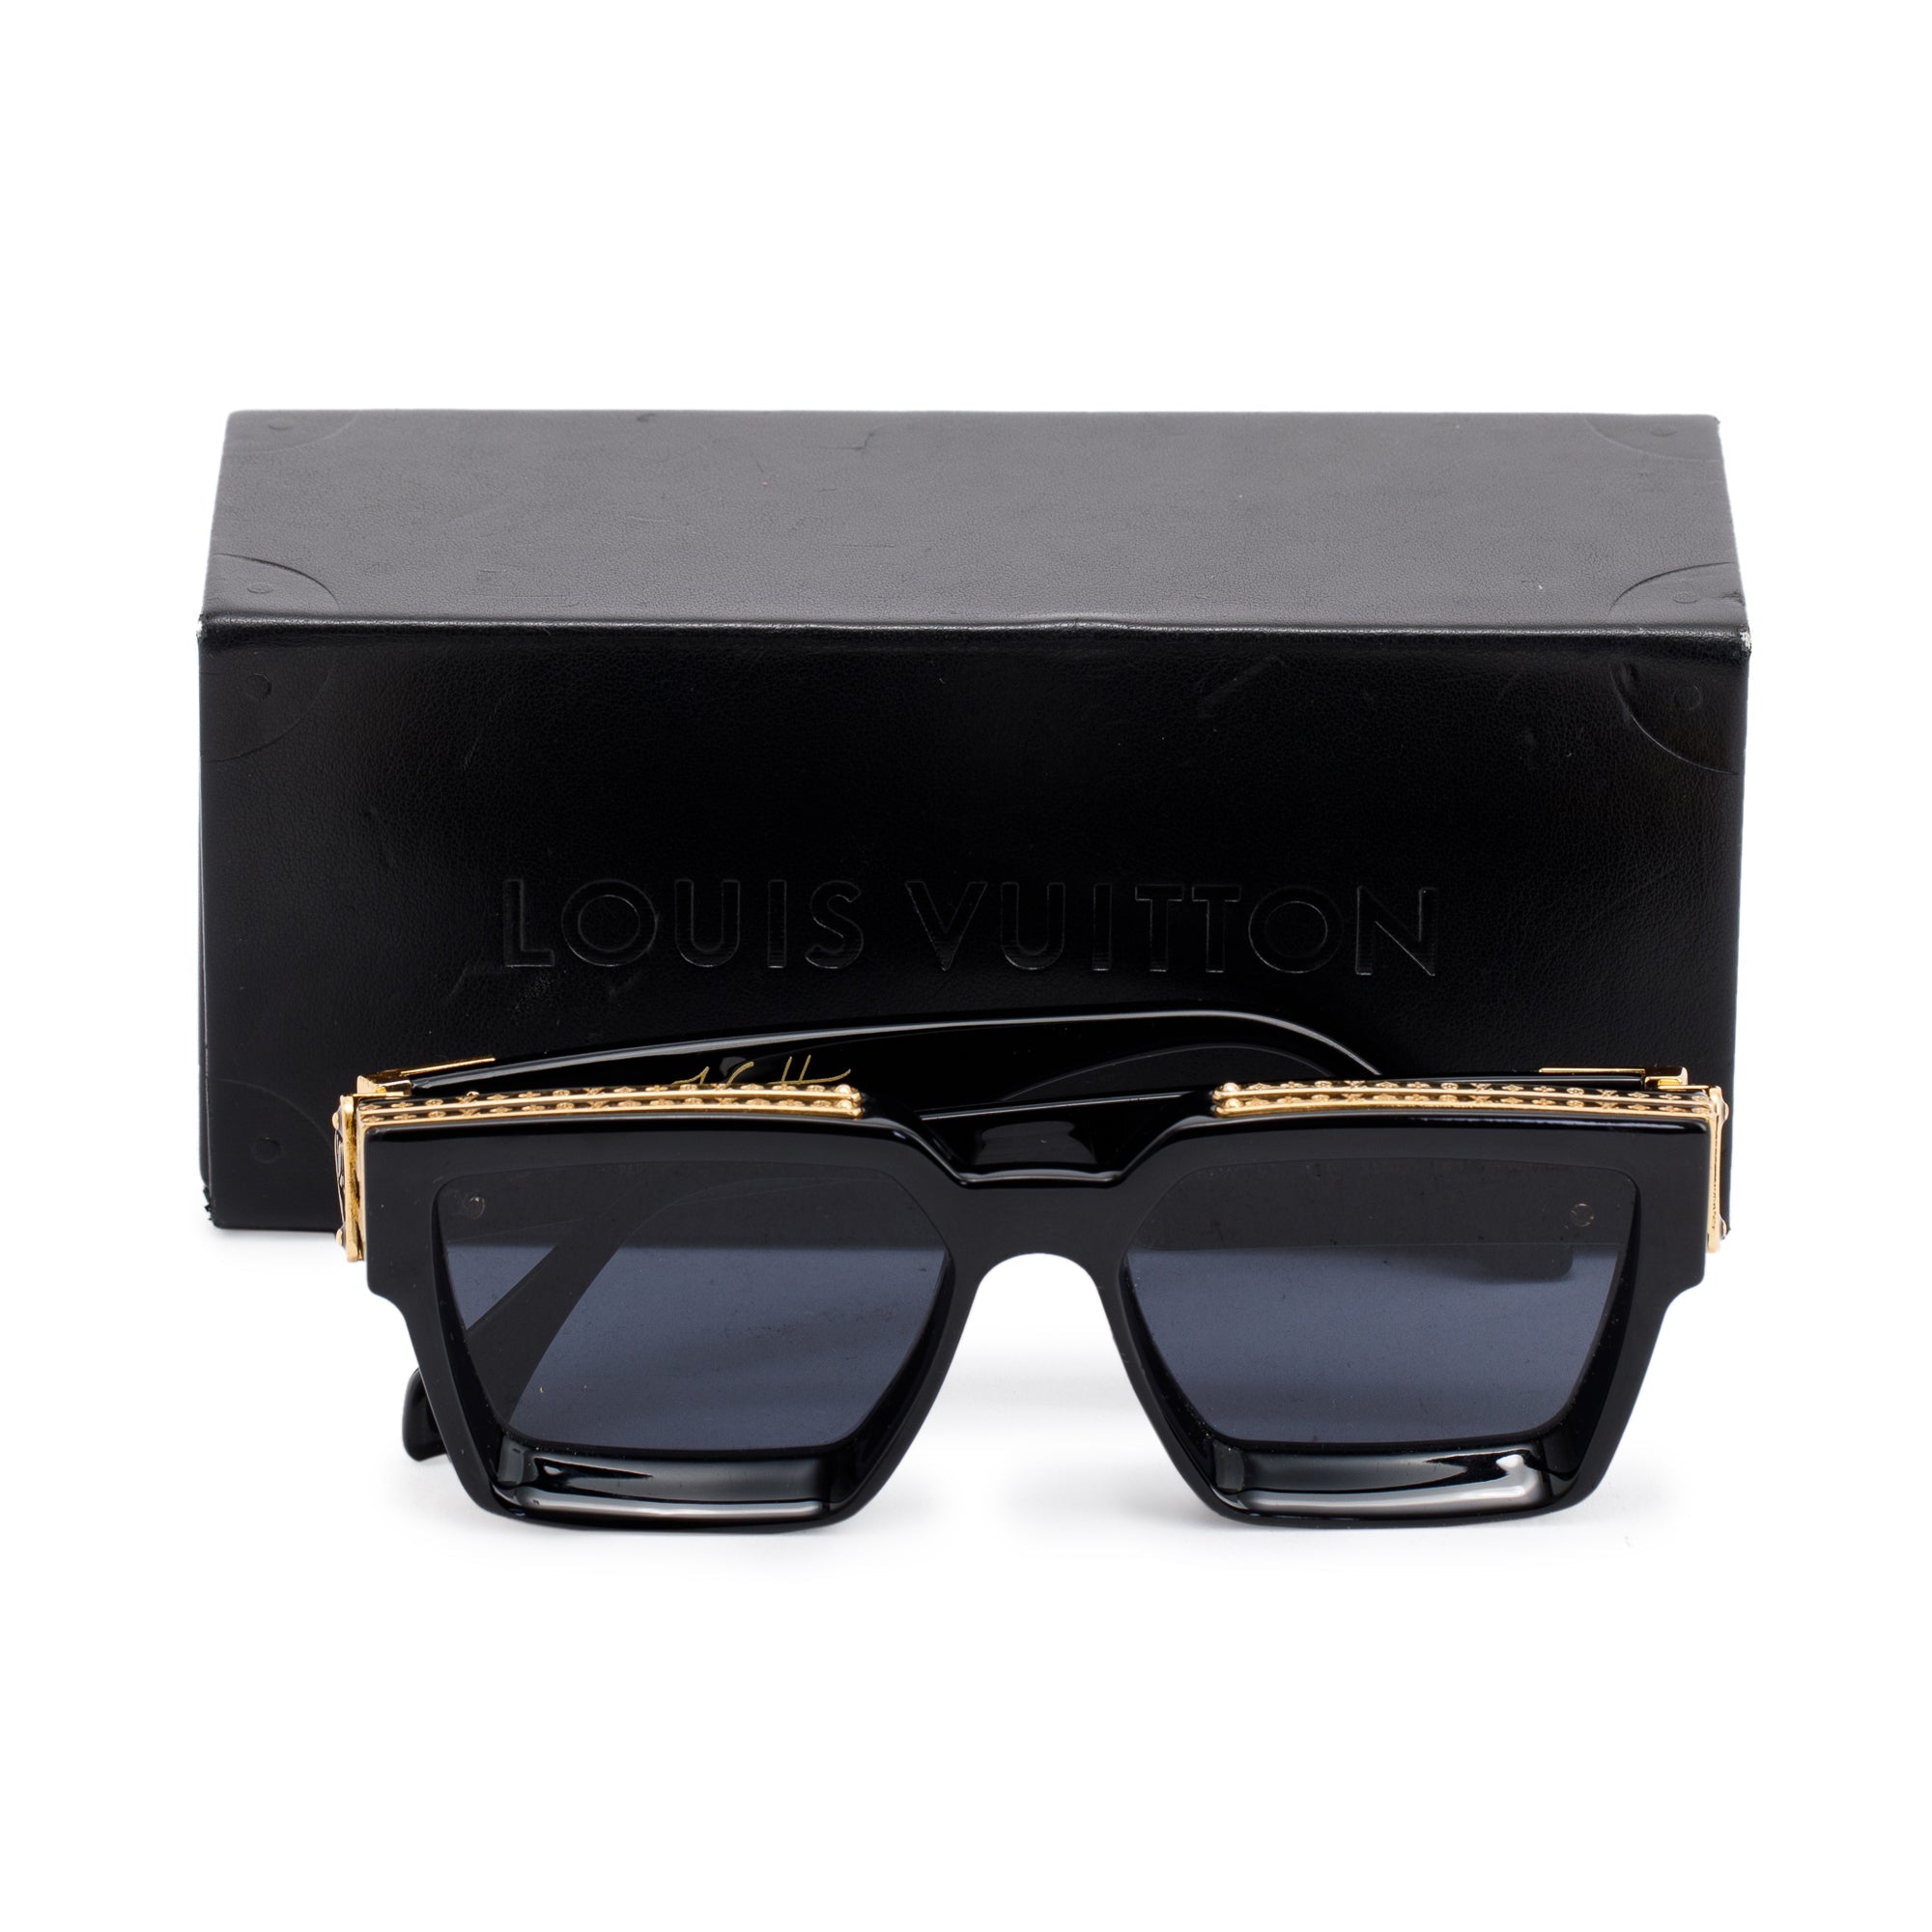 Louis Vuitton 2020 1.1 Millionaires Sunglasses w/ Box – Oliver